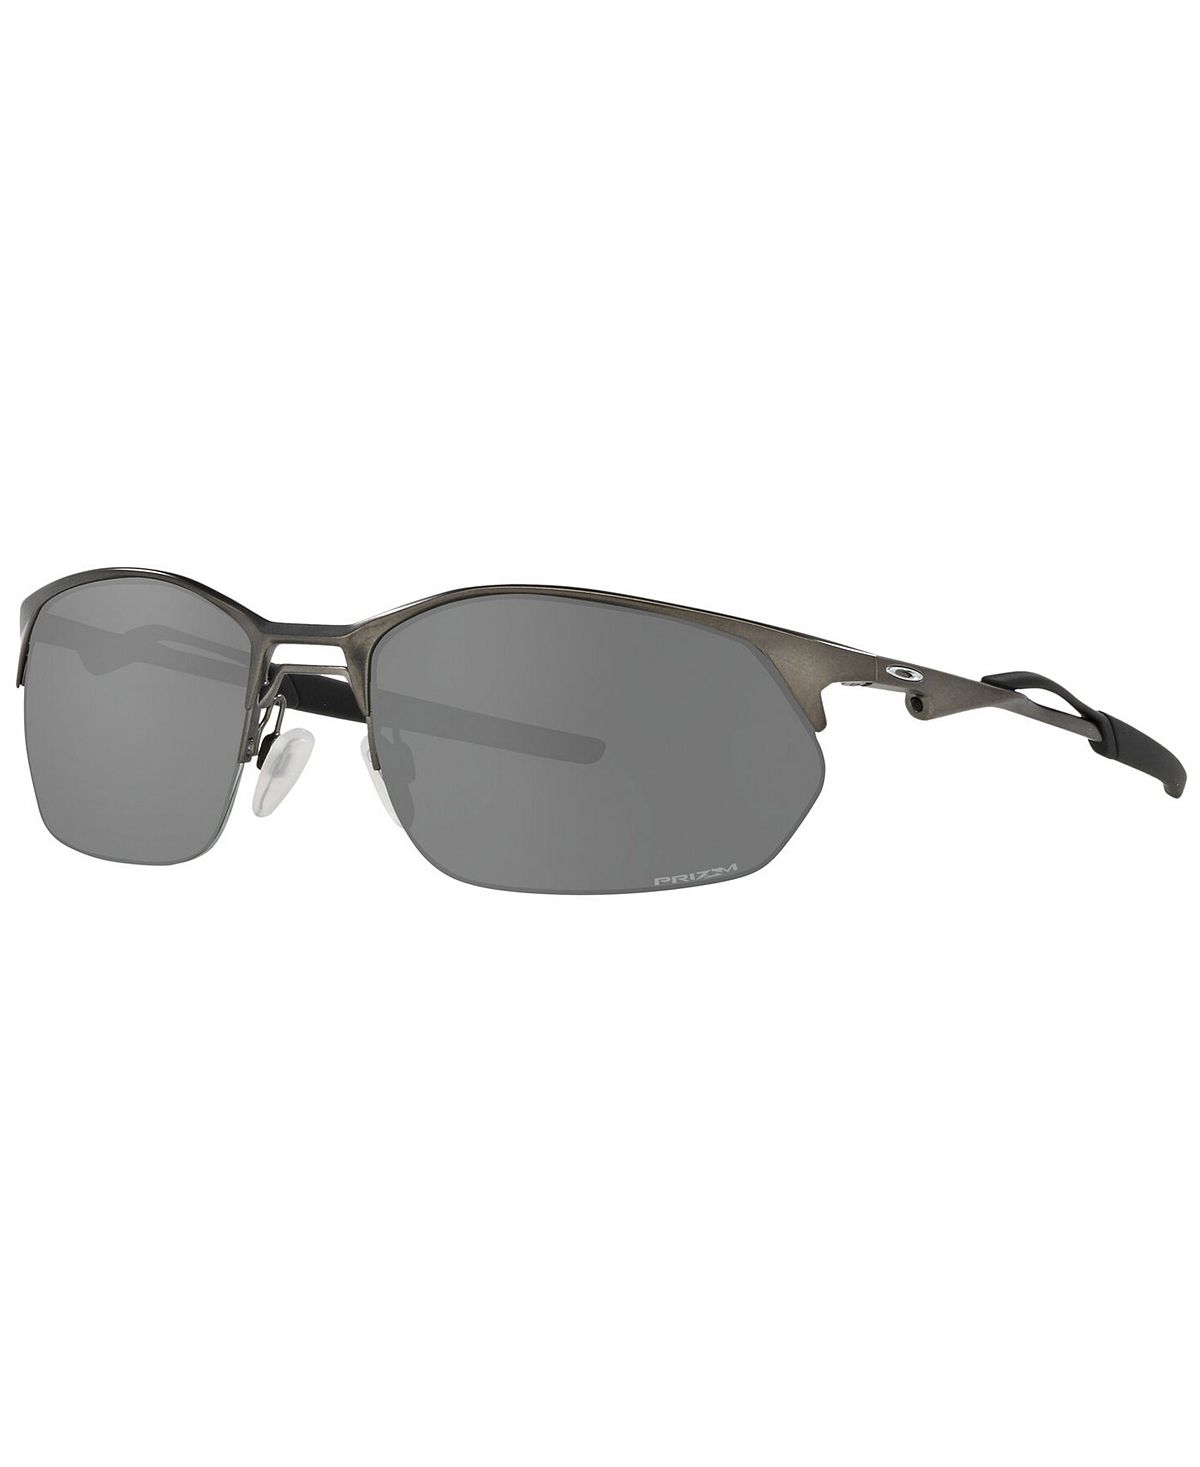 Мужские солнцезащитные очки, oo4145 60 Oakley, мульти